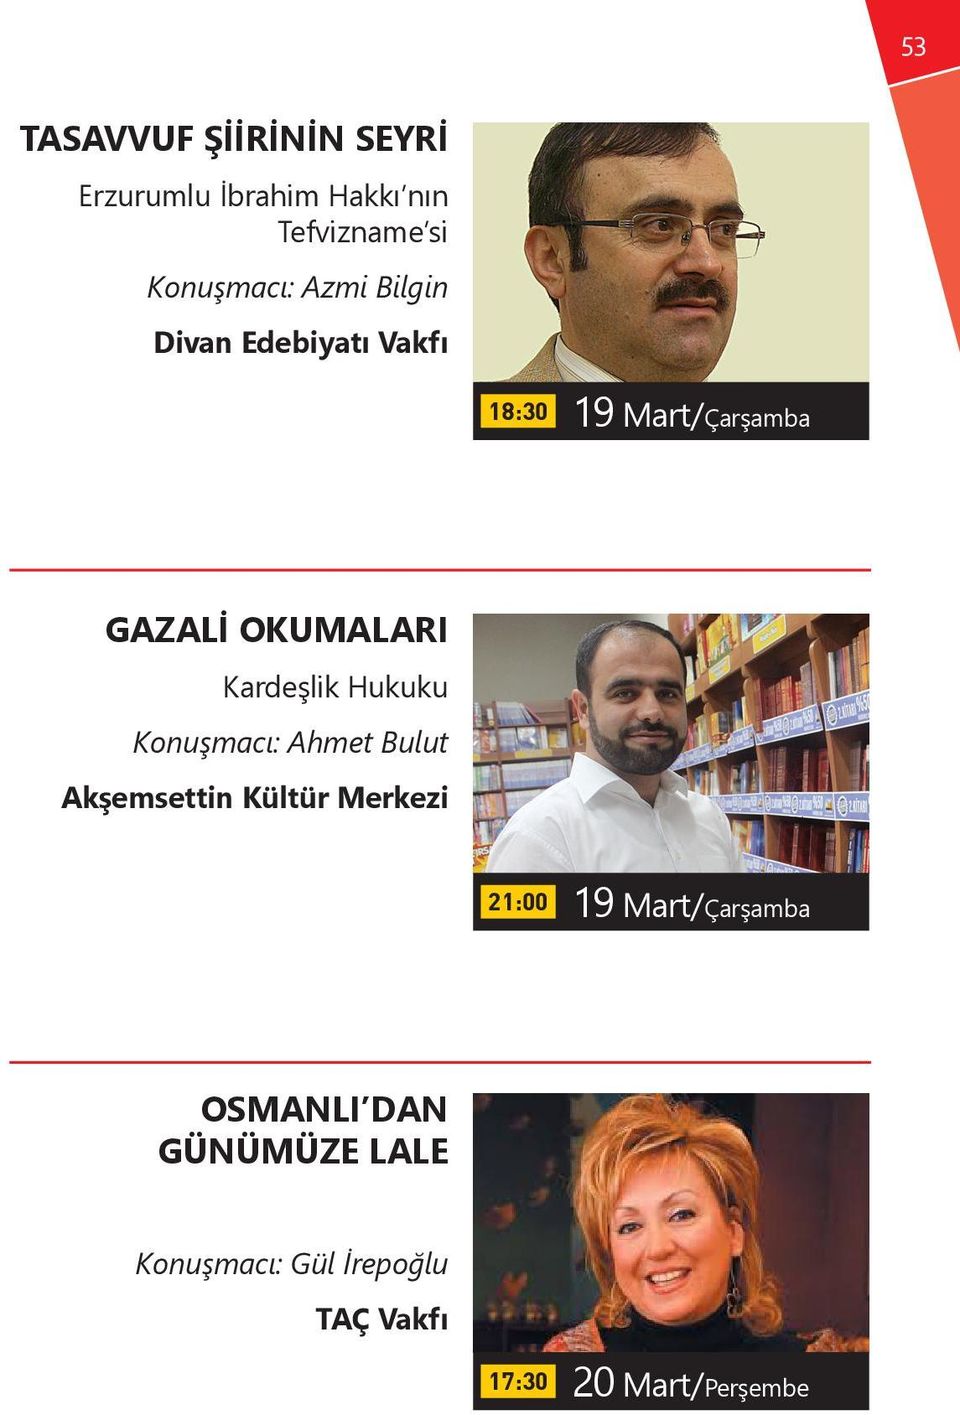 Hukuku Konuşmacı: Ahmet Bulut Akşemsettin Kültür Merkezi 21:00 19 Mart/Çarşamba